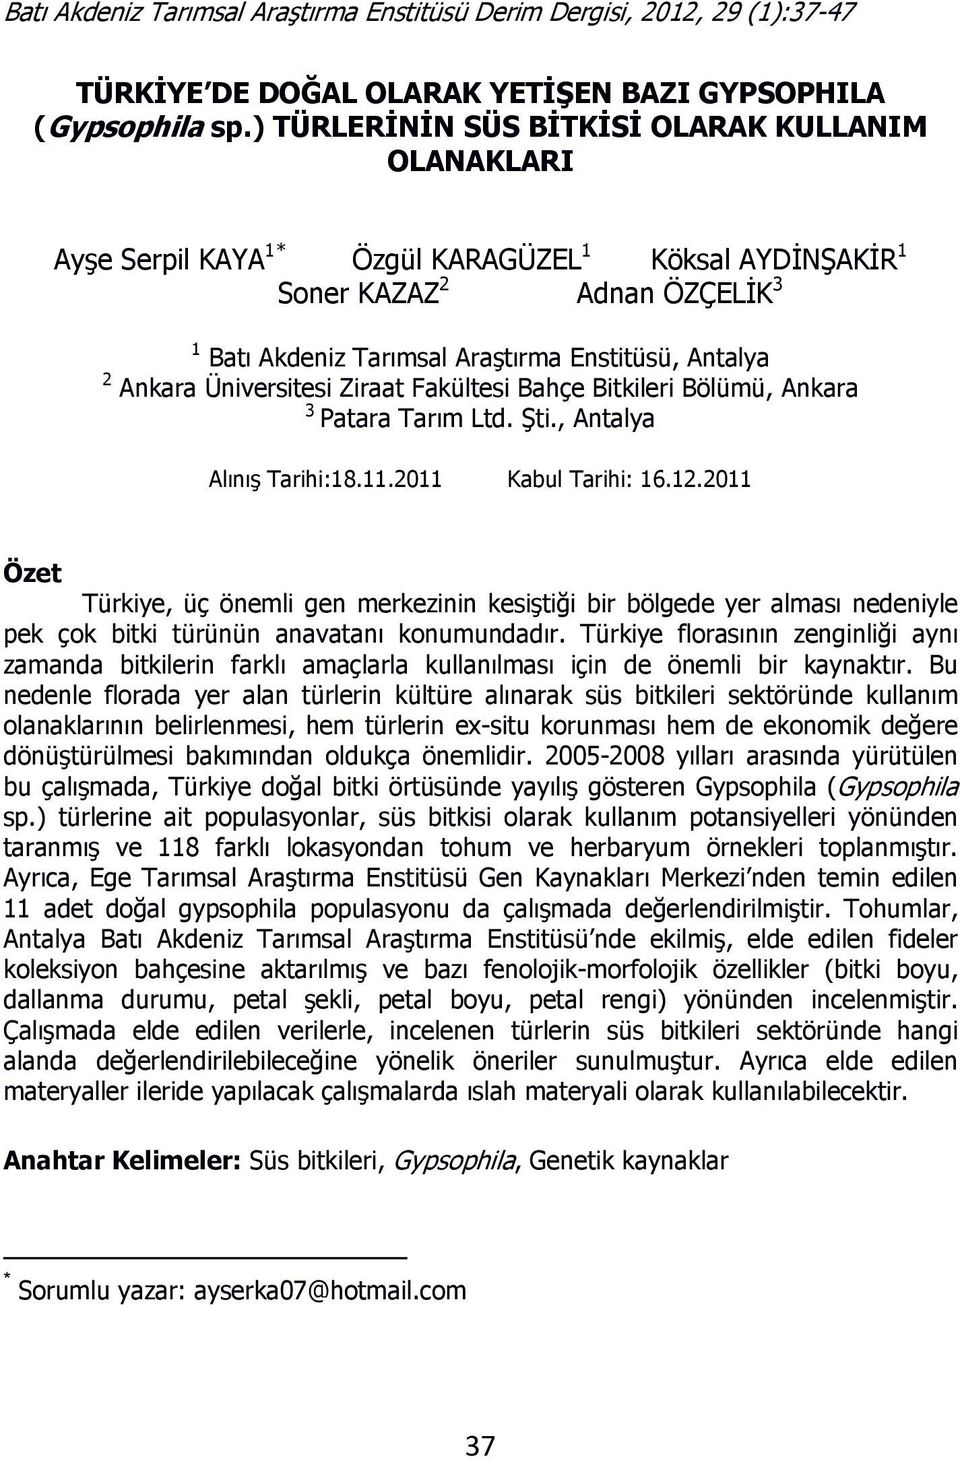 Ankara Üniversitesi Ziraat Fakültesi Bahçe Bitkileri Bölümü, Ankara 3 Patara Tarım Ltd. Şti., Antalya Alınış Tarihi:18.11.2011 Kabul Tarihi: 16.12.